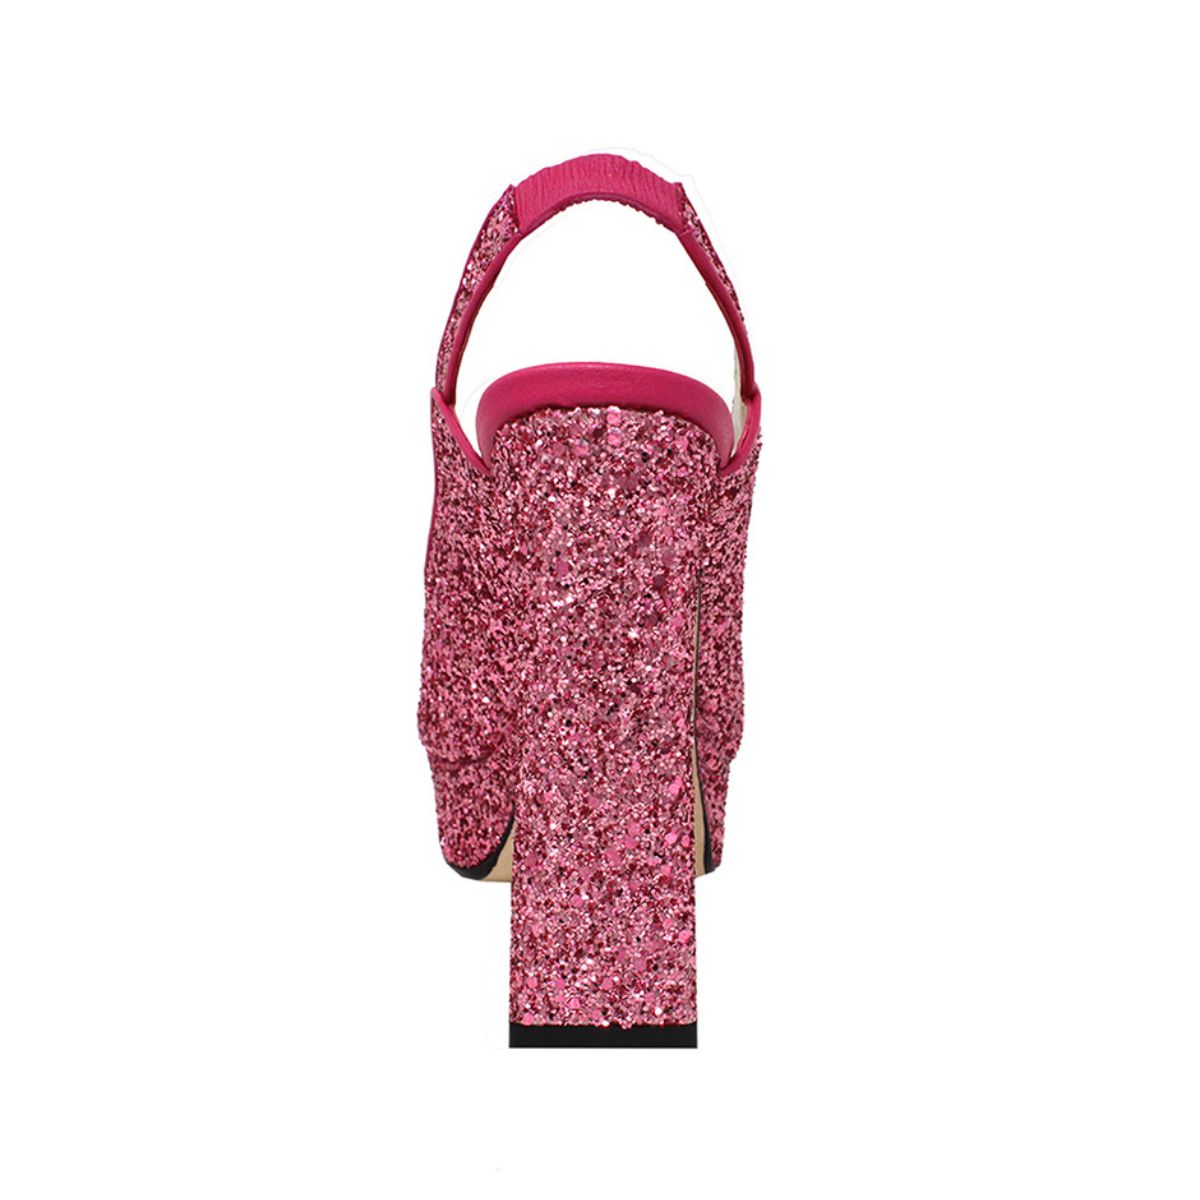 CHERYL 125 - Glitter Rosa Regina Romero Zapato Sandalia Plataforma Tacon Alto Para Dama en Piel